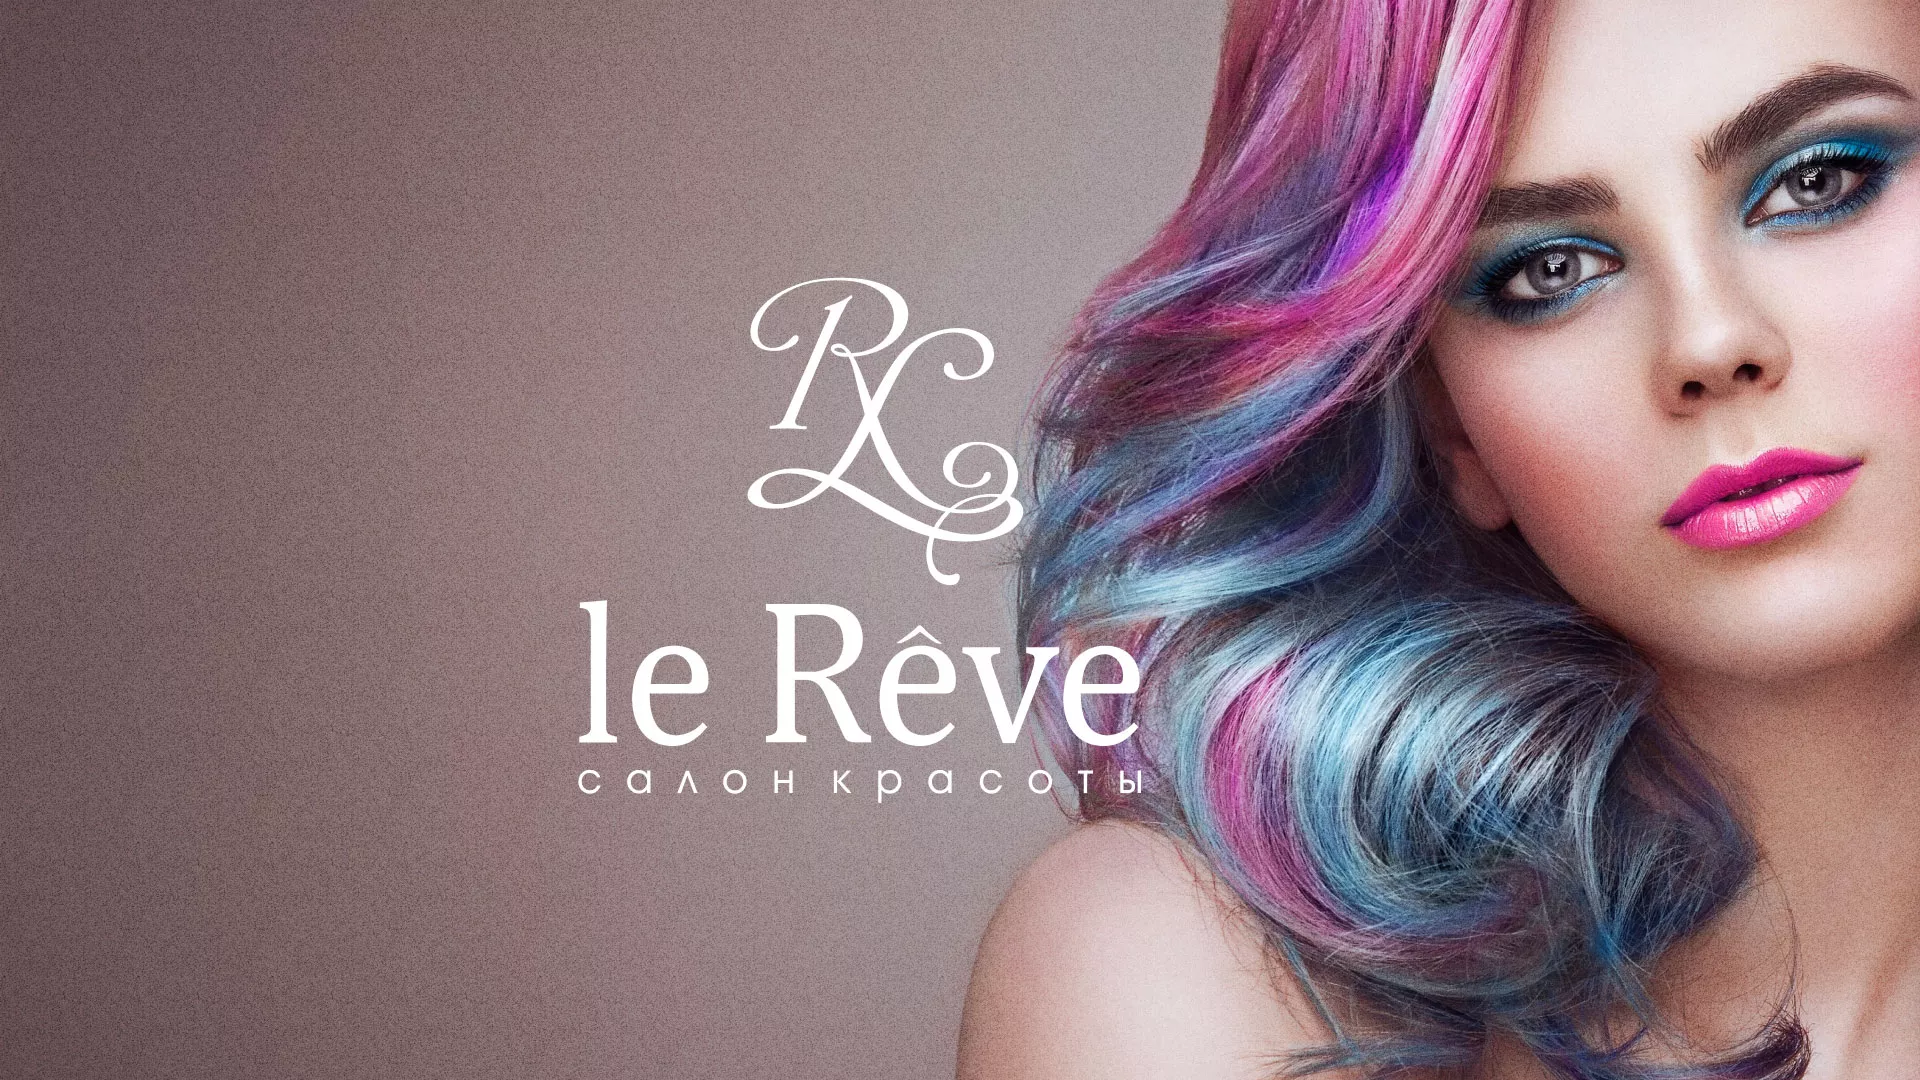 Создание сайта для салона красоты «Le Reve» в Балее